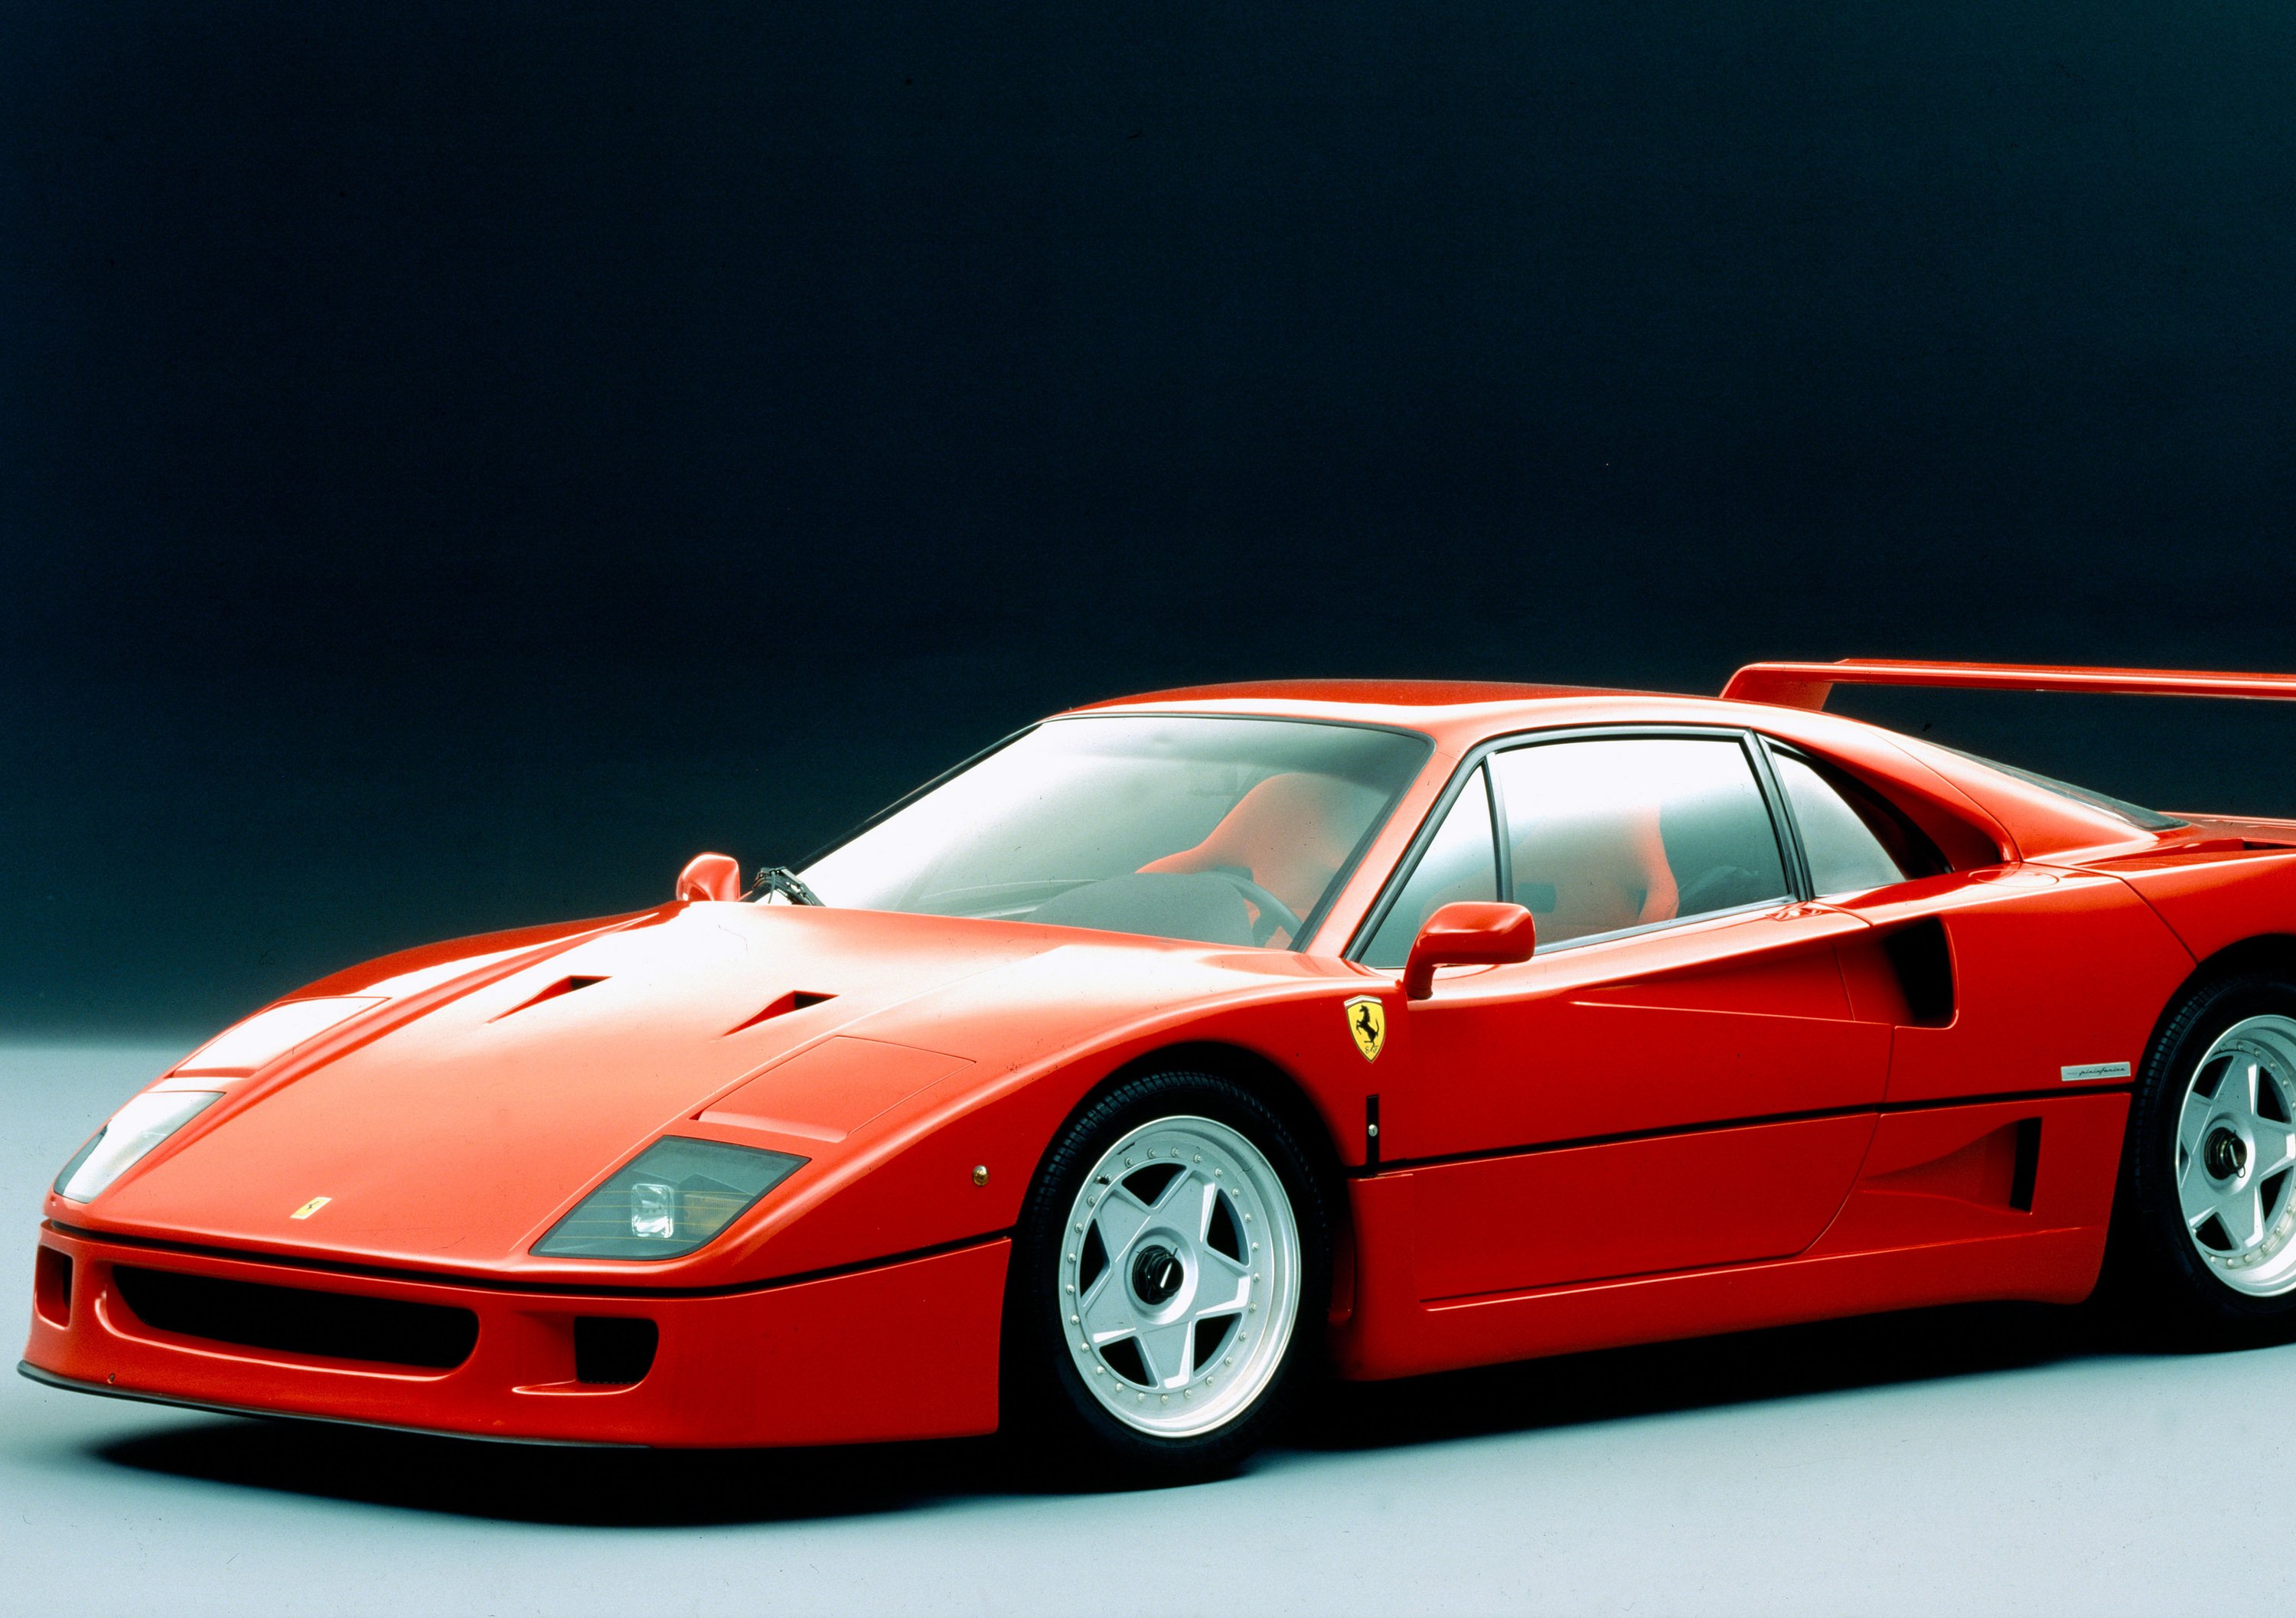 Ferrari F40 compie 30 anni! Tanti auguri alla leggenda